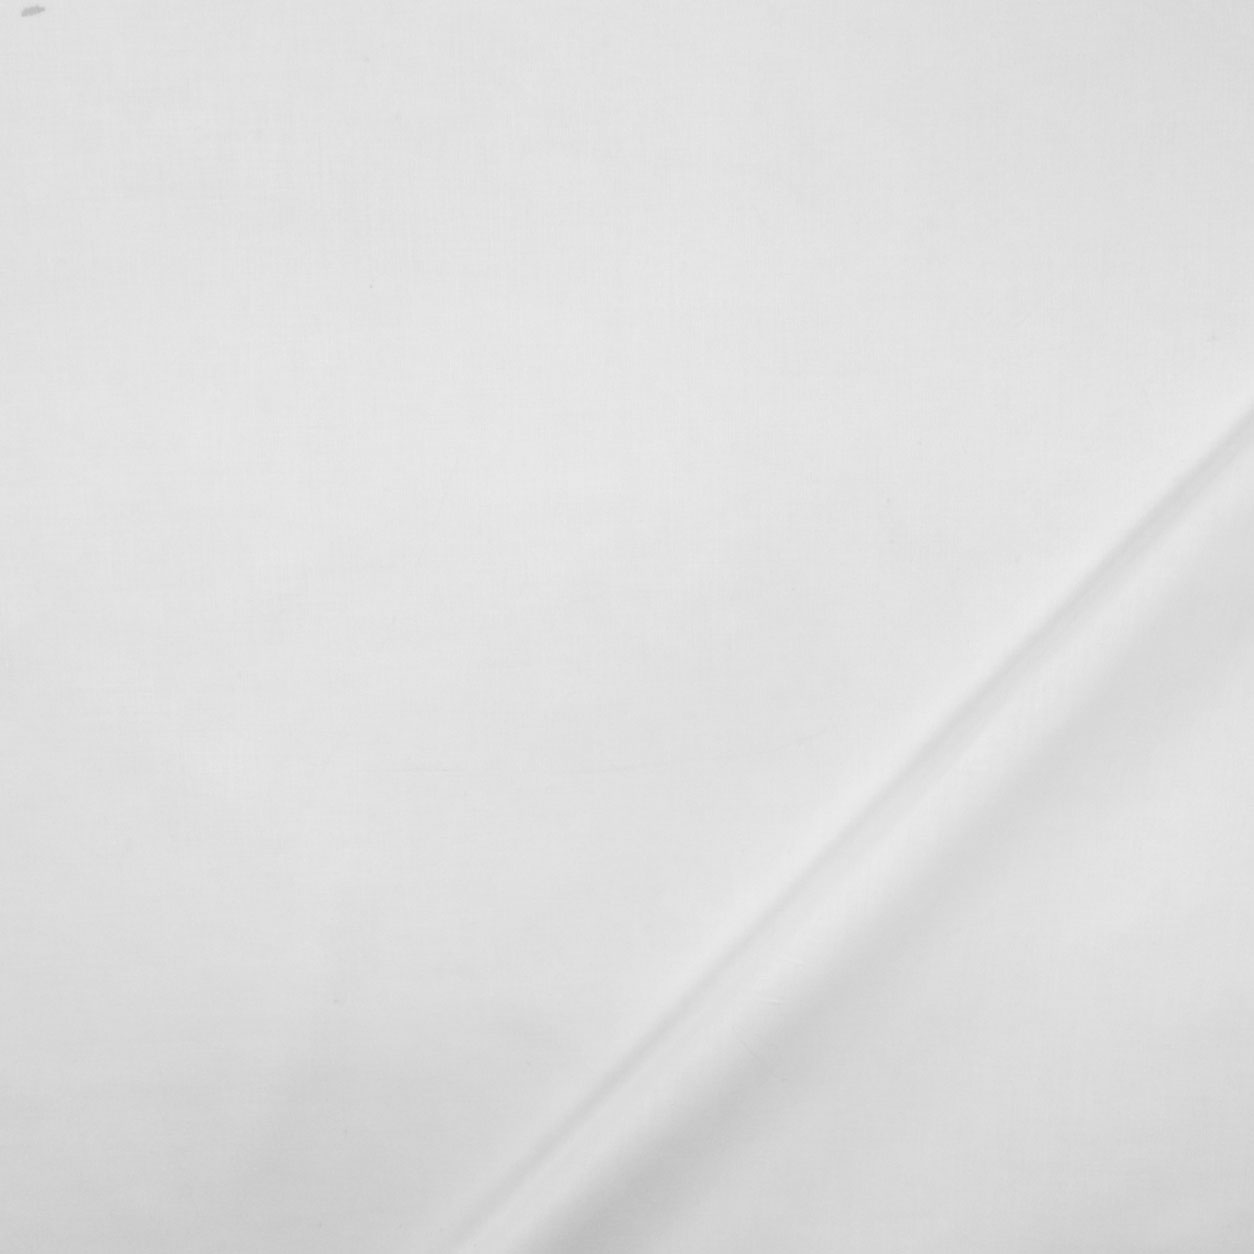 Mussola Bianca di Cotone H 150 cm